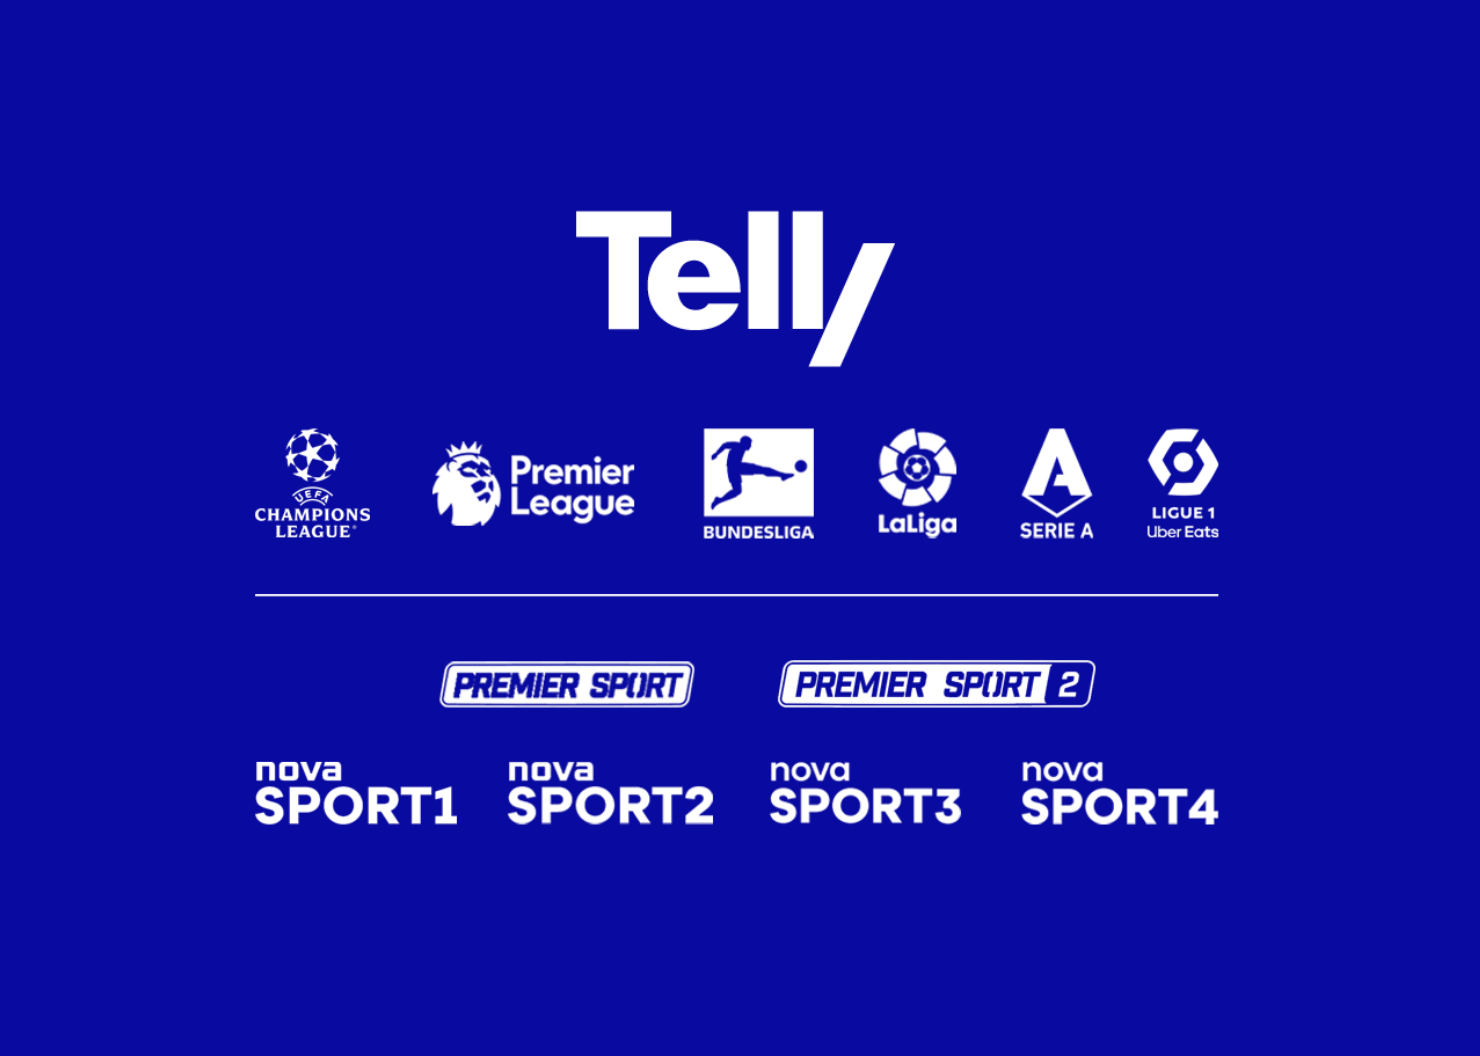 Telly má ve své nabídce nejprestižnější ligy světa včetně Serie A živě